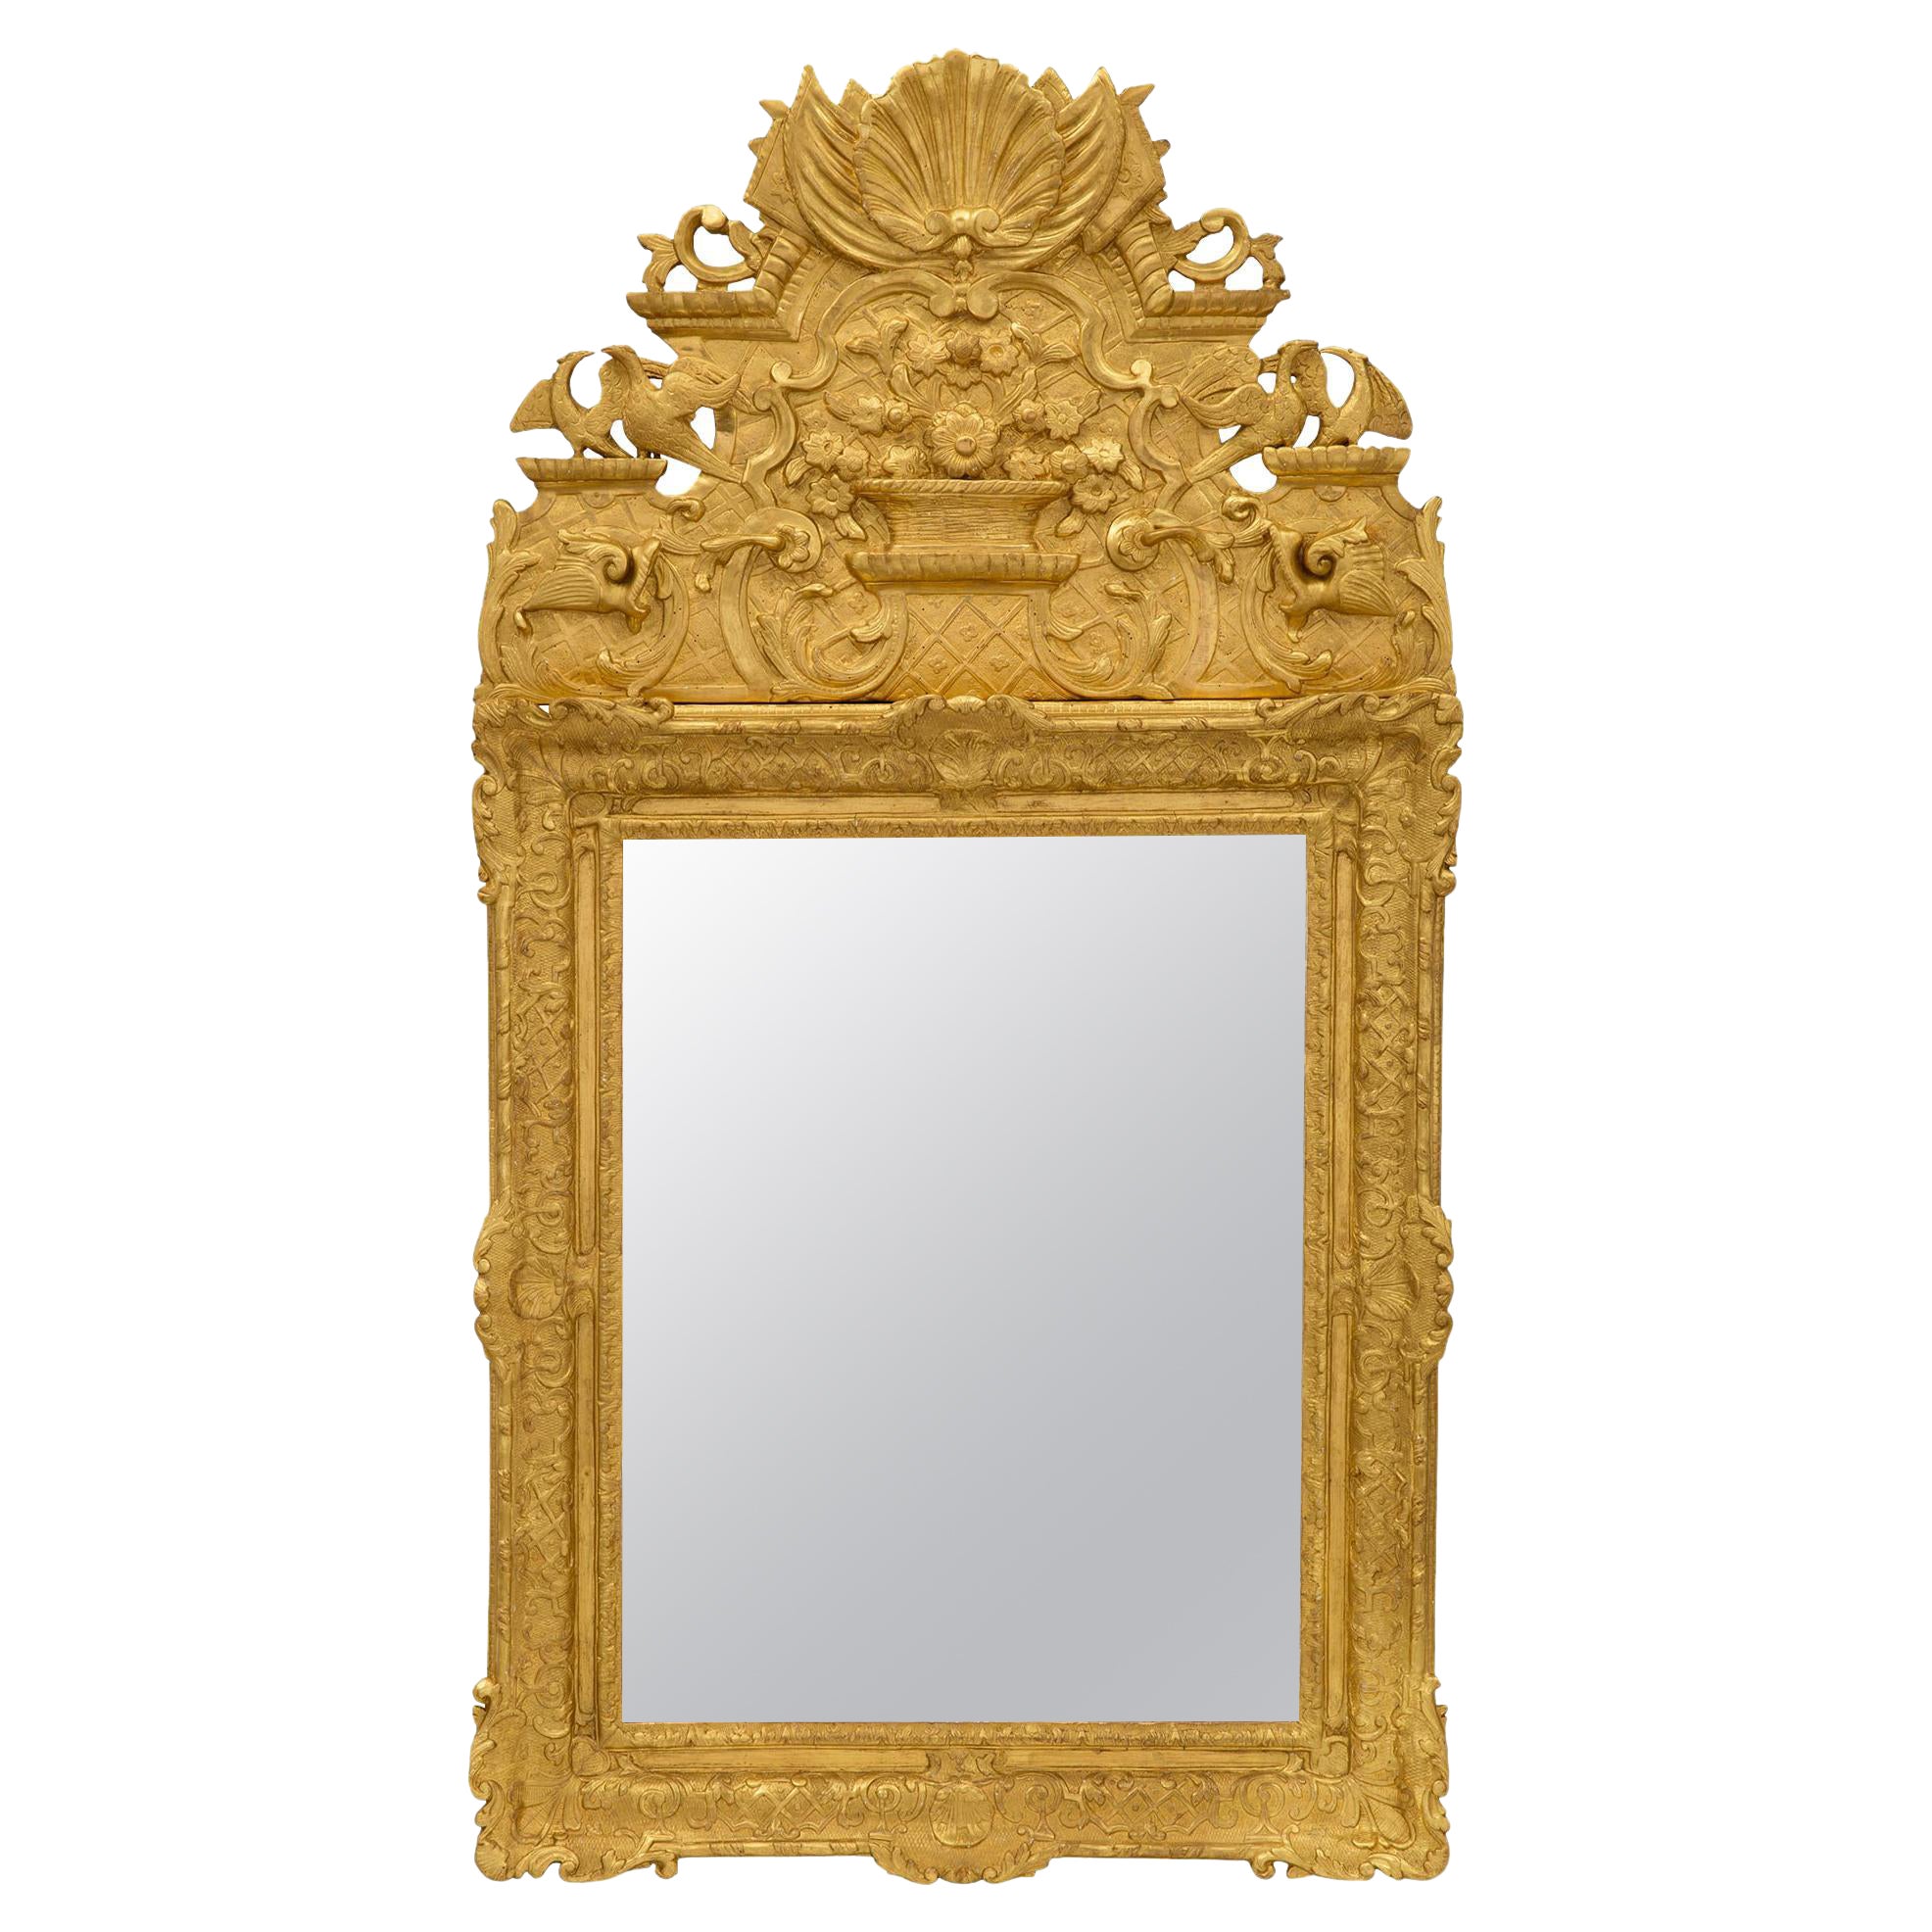 Spiegel aus vergoldetem Holz aus der Regence-Periode des 18. Jahrhunderts